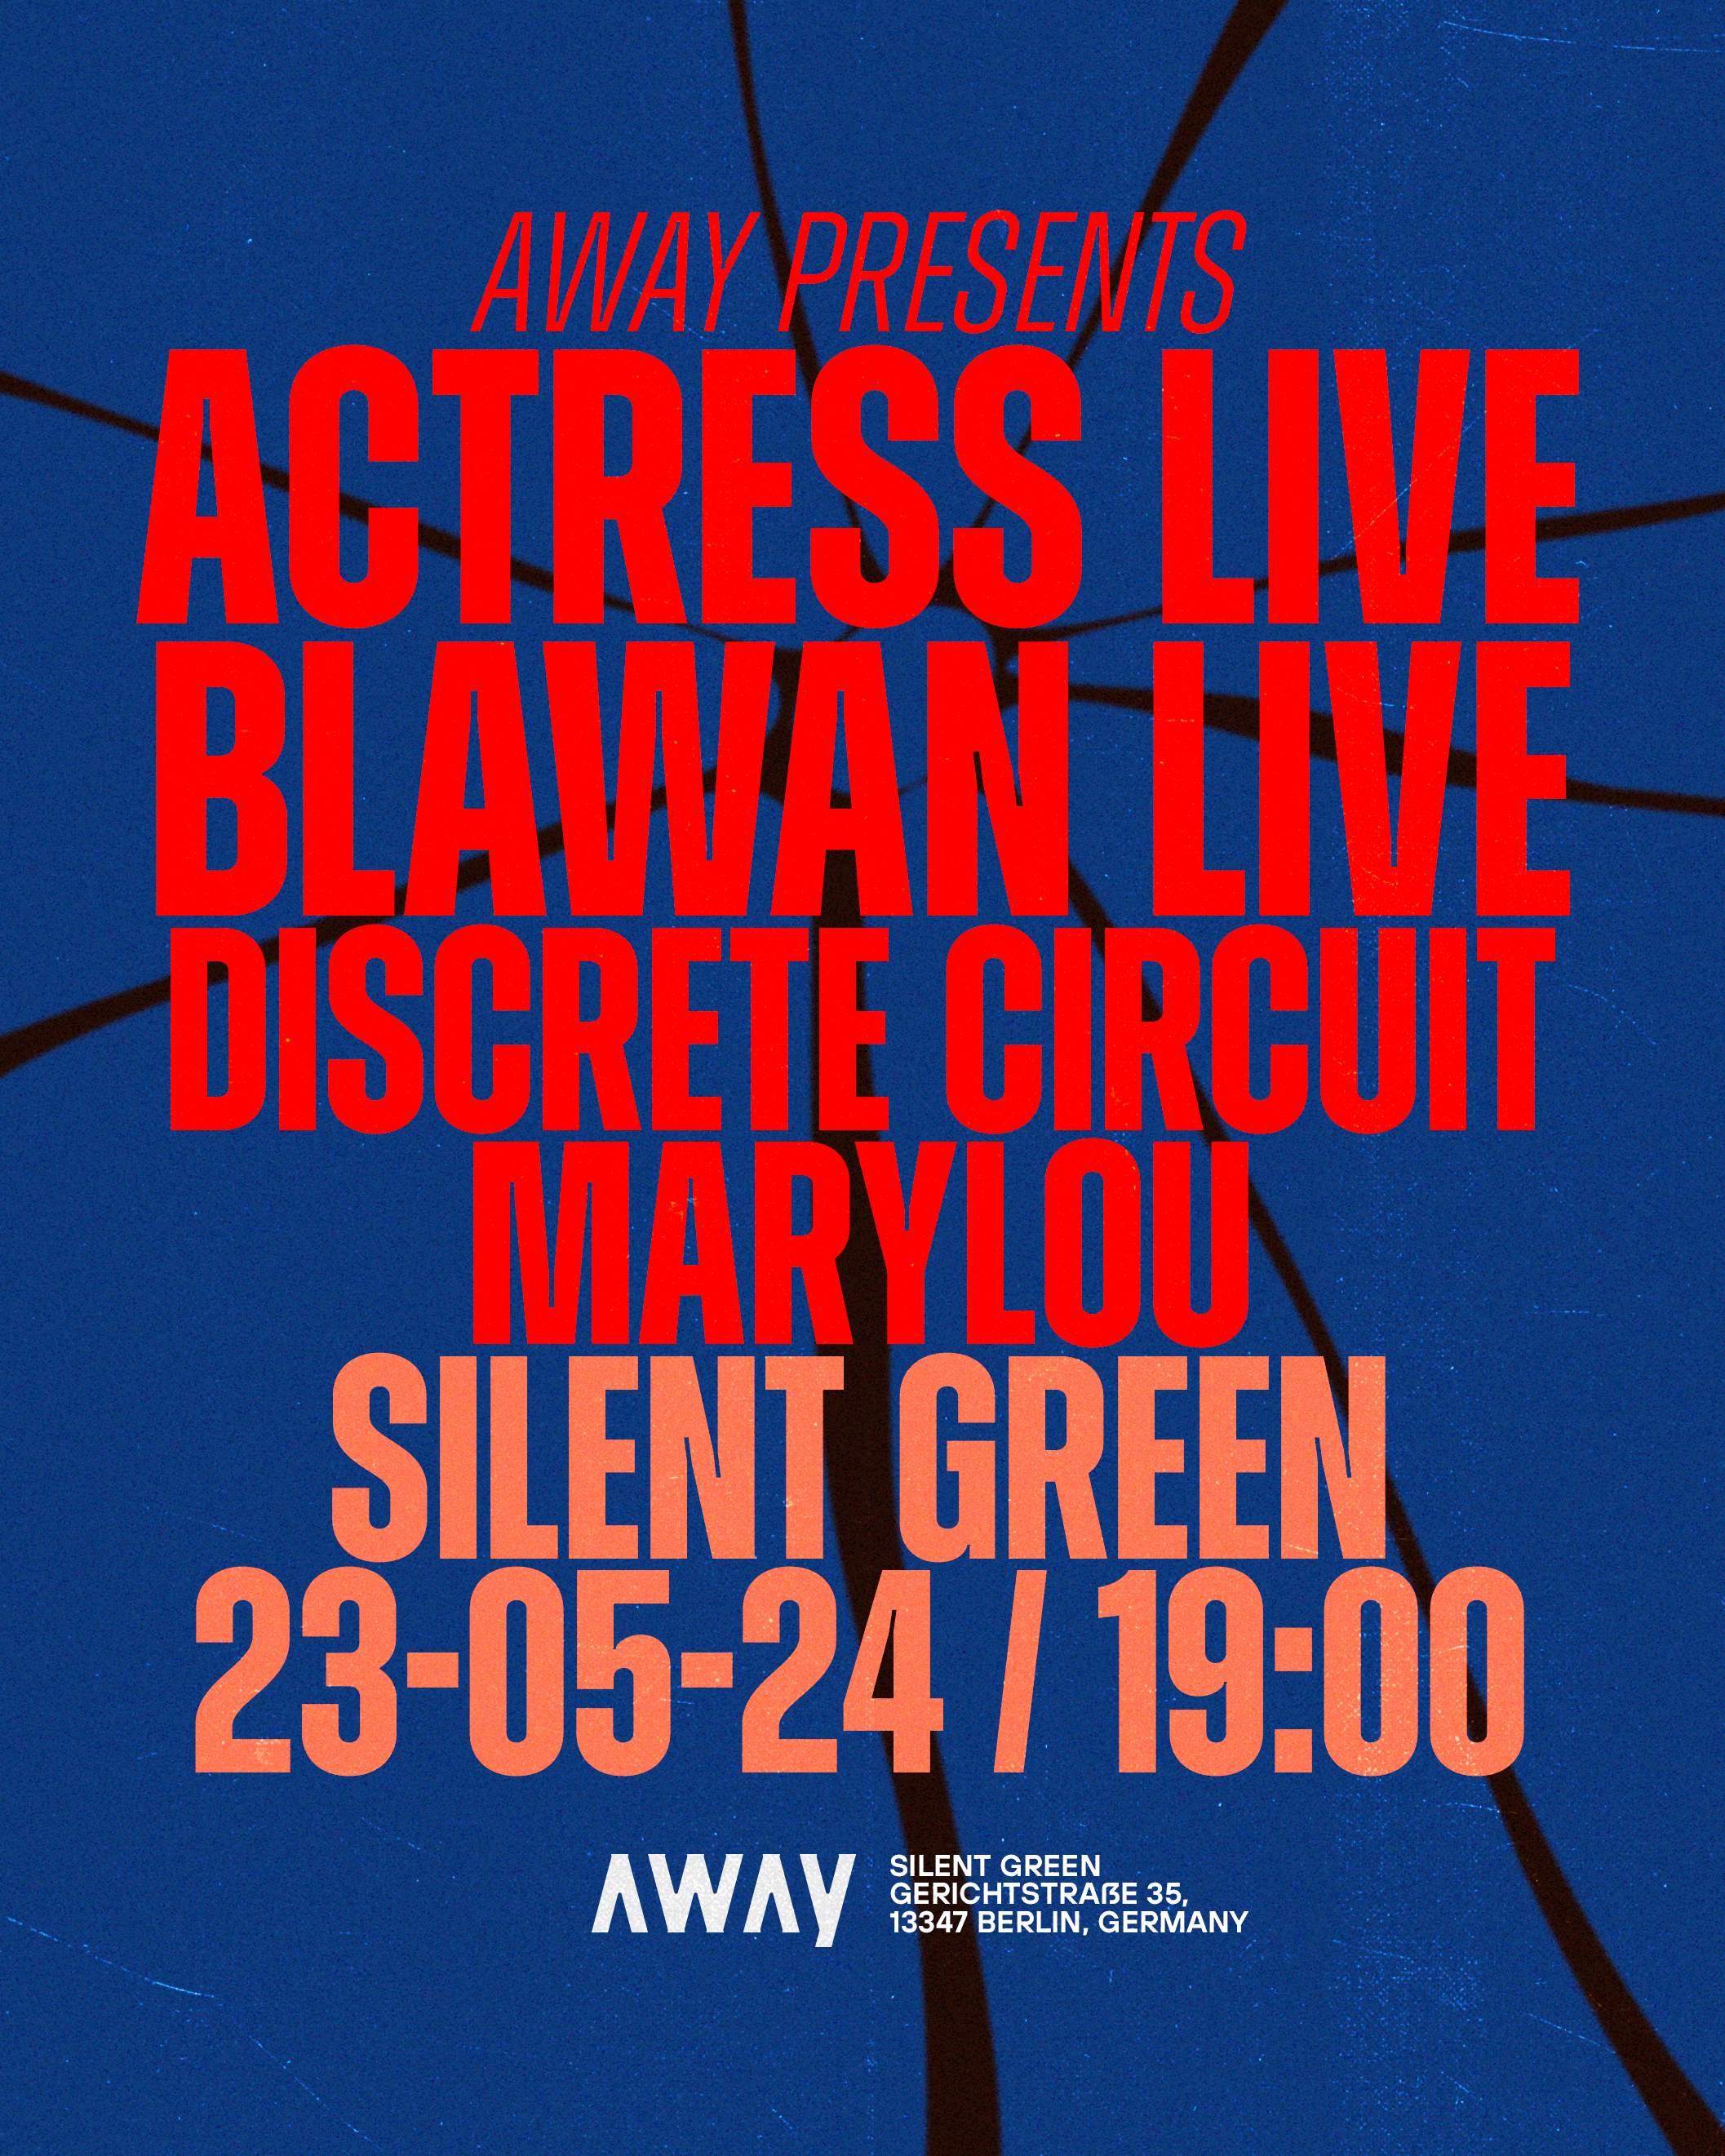 AWAY presents Actress*LIVE & Blawan*LIVE - Página frontal